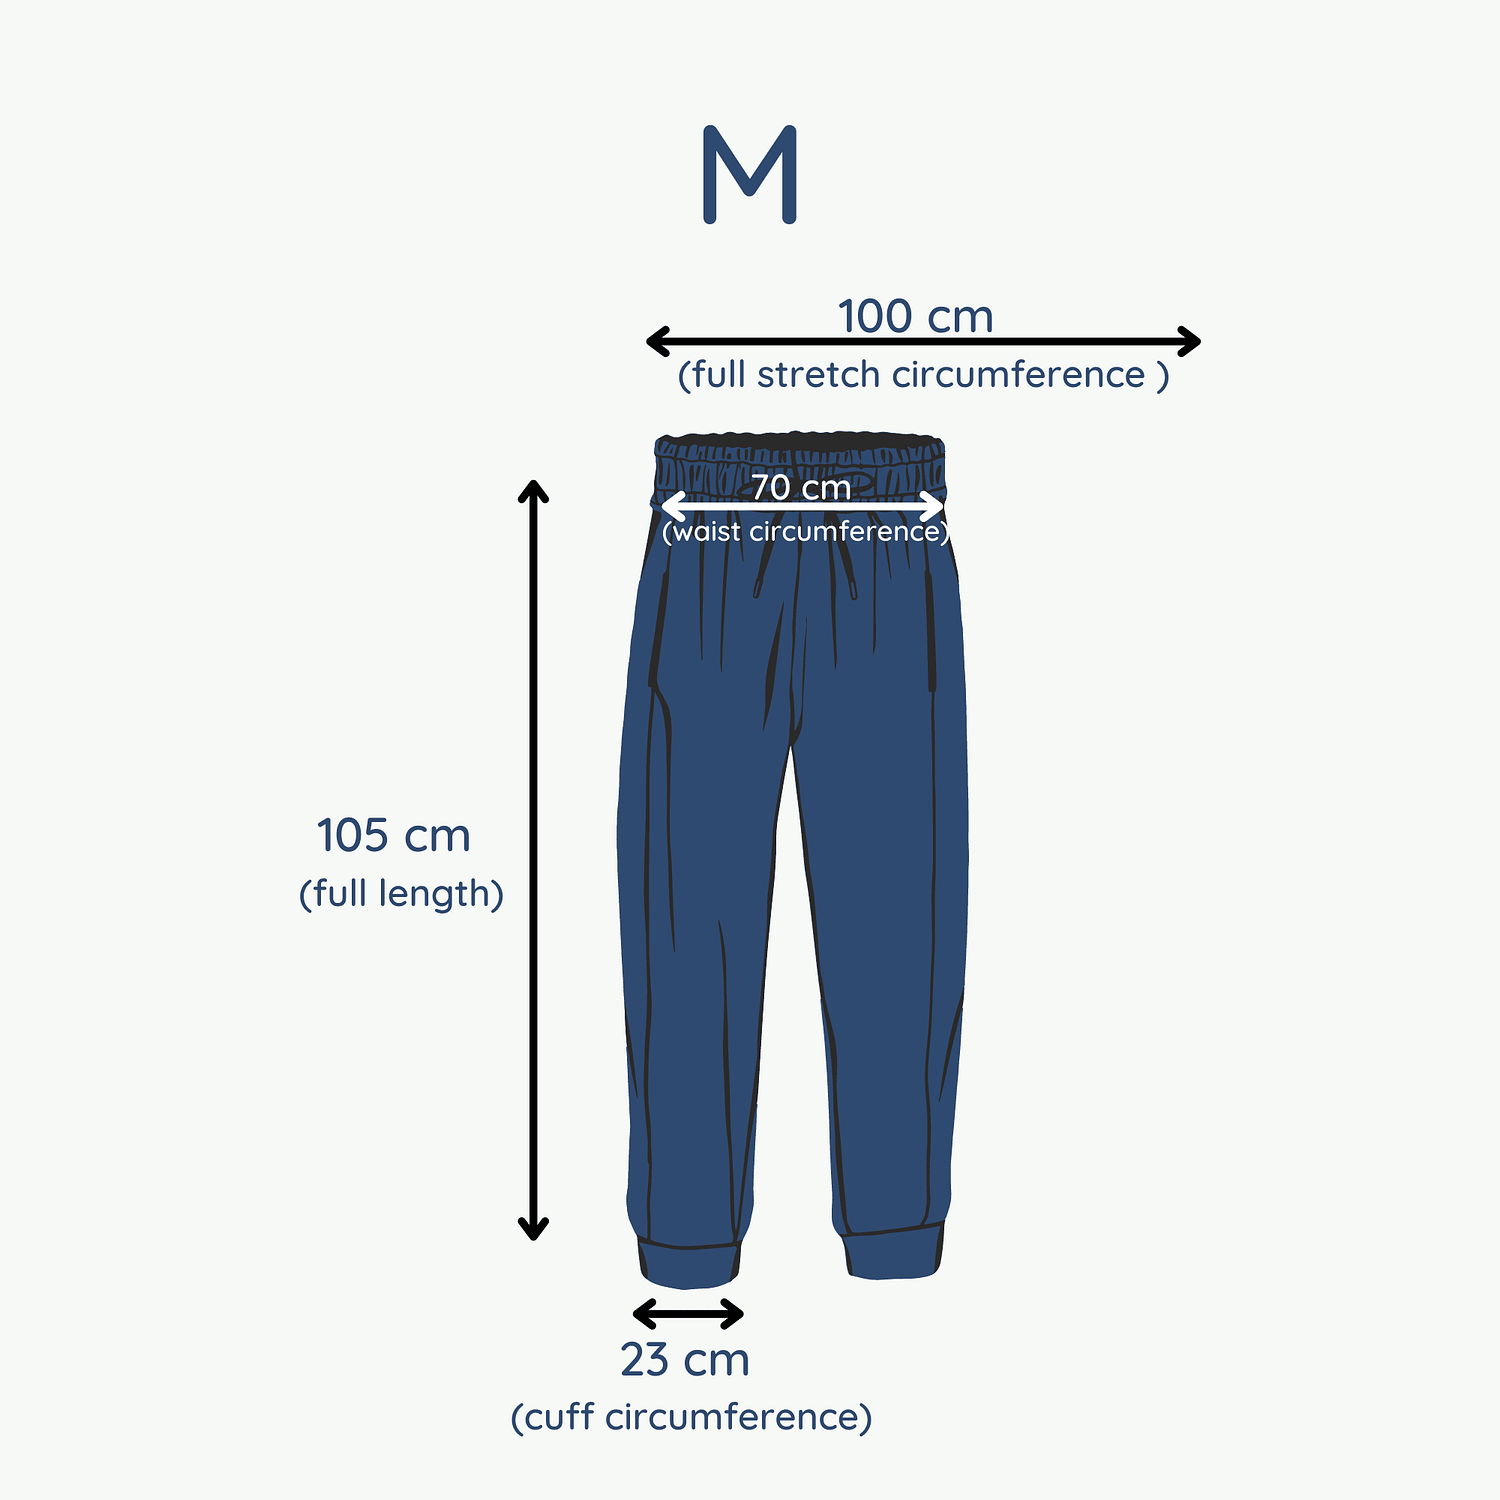 Scrubd Size Guide - M Pants